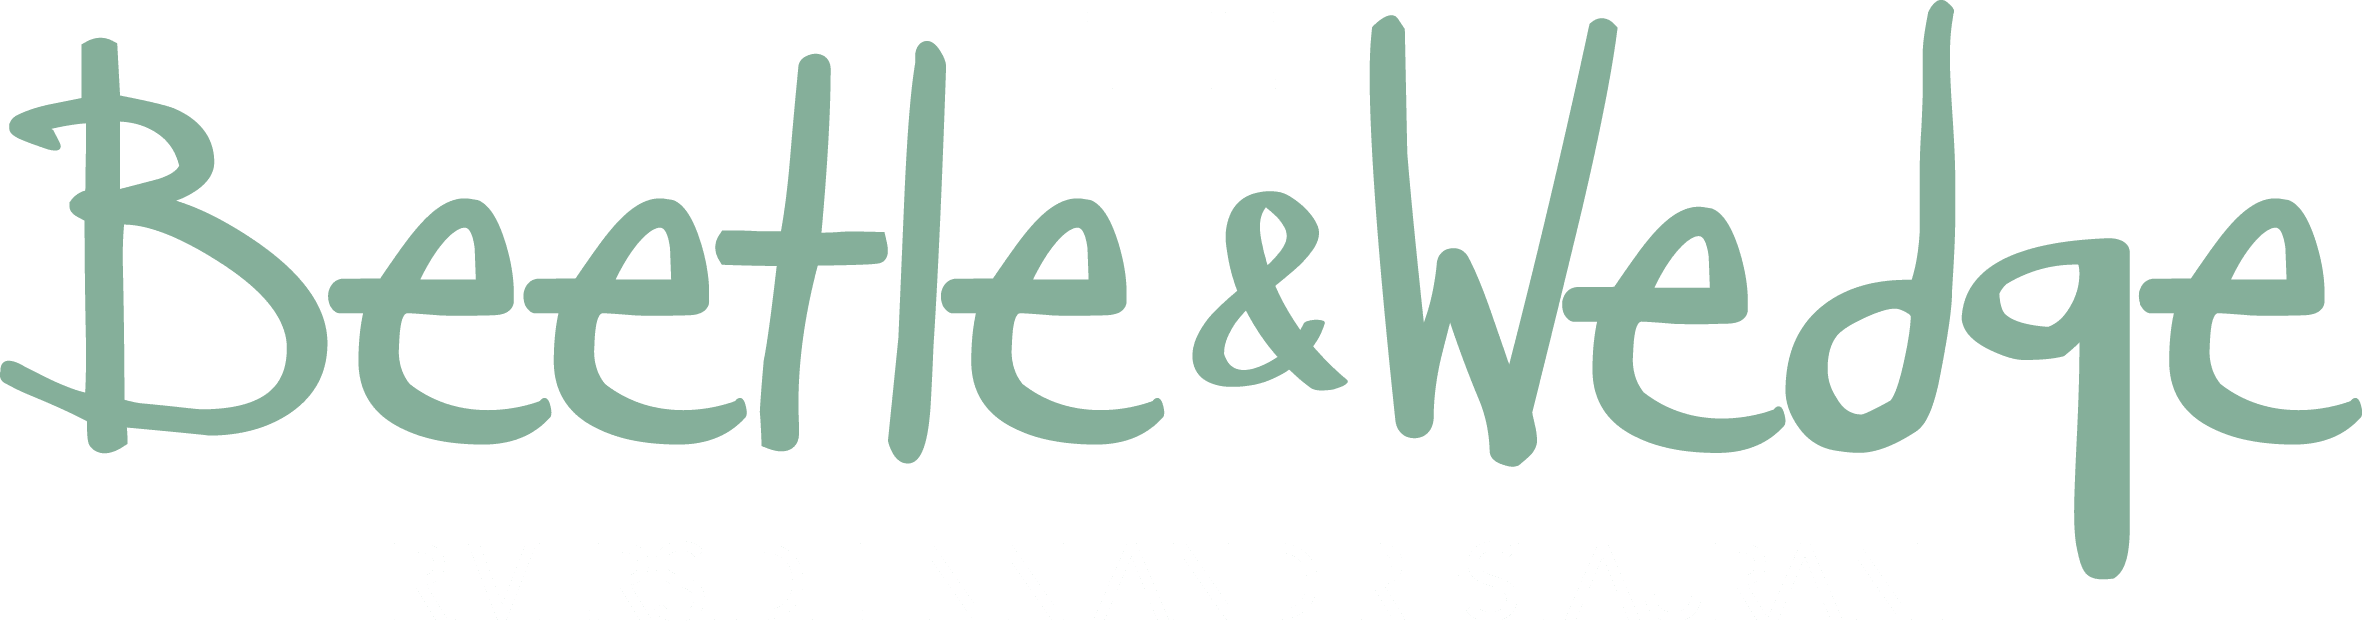 Beetle and Wedge Logo